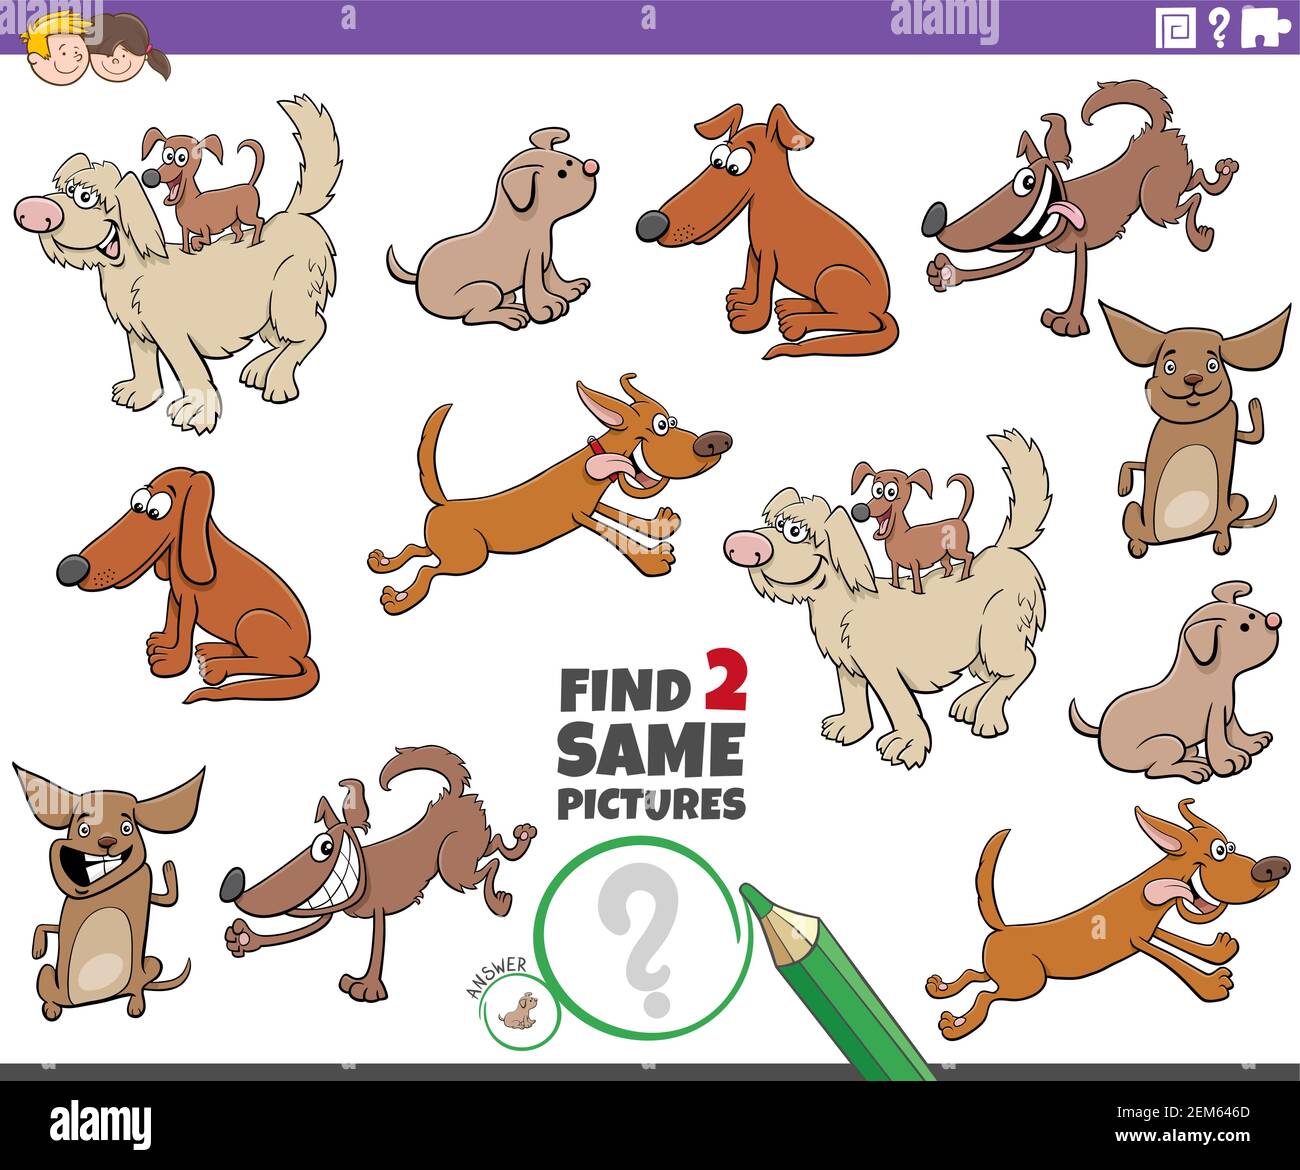 Cartoon Illustration der Suche nach zwei gleichen Bildern pädagogische  Spiel mit Lustige Hunde Comic-Figuren Stock-Vektorgrafik - Alamy